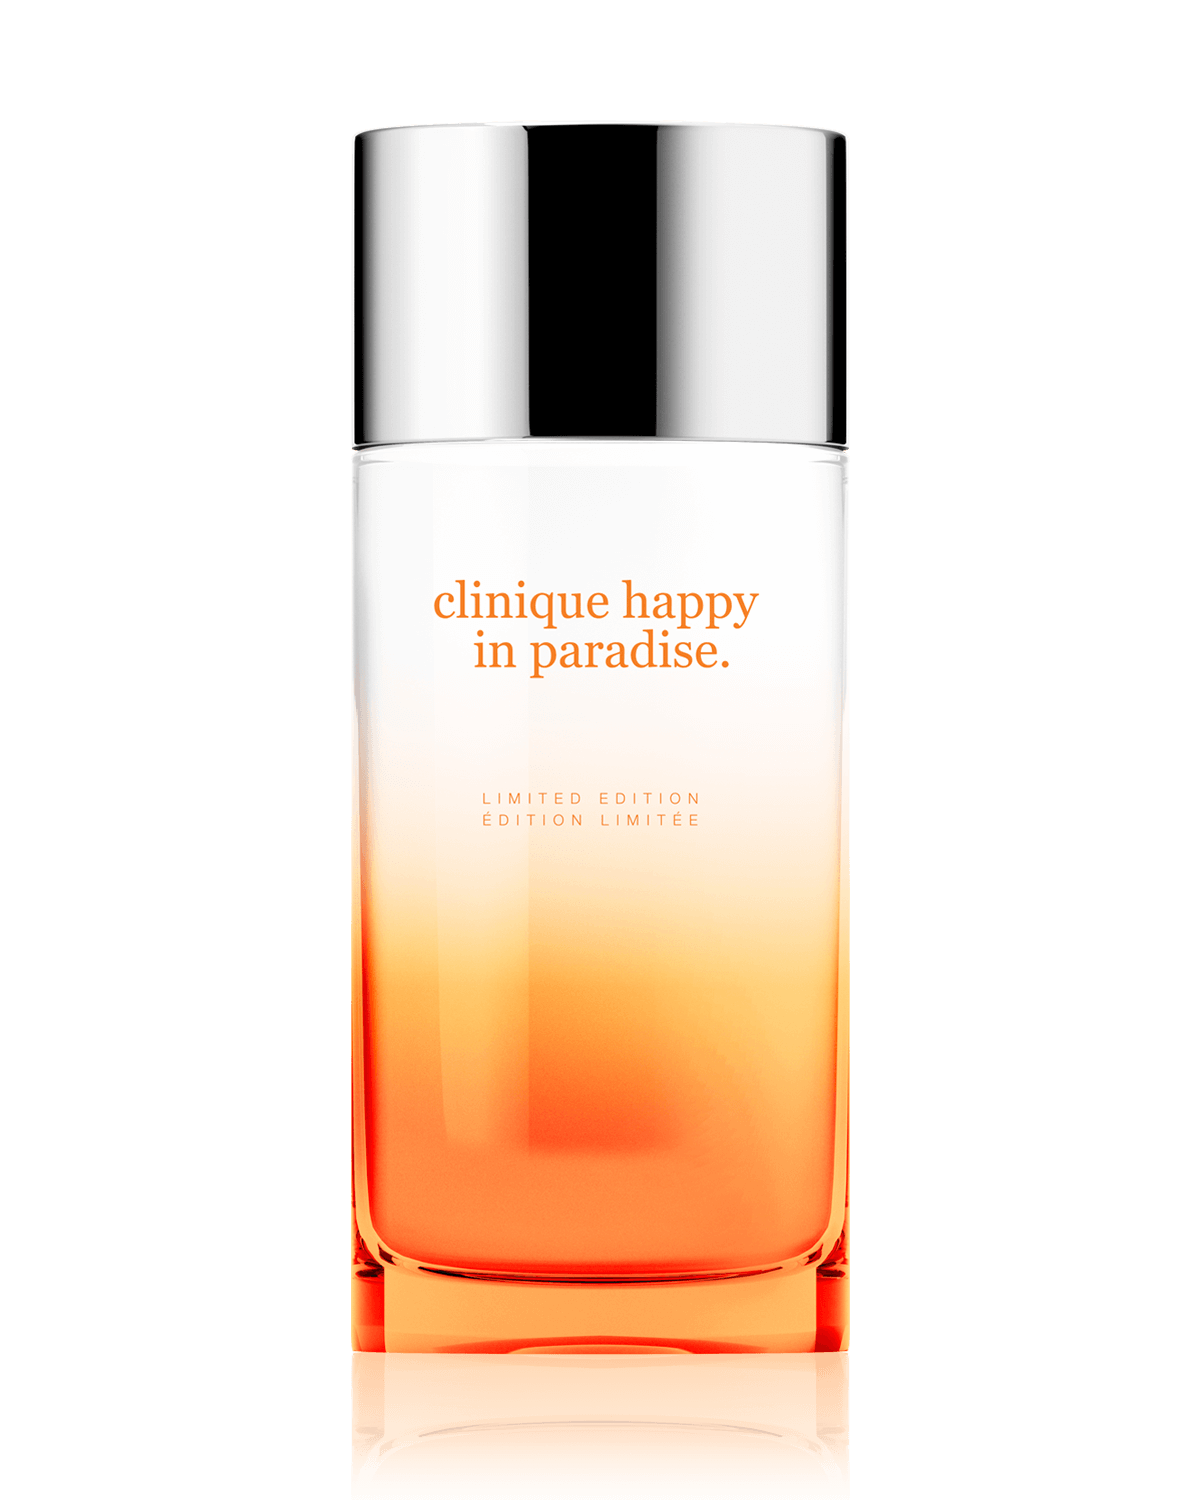 Spray Limited Parfum Clinique Eau de Paradise™ Happy Edition Clinique in |